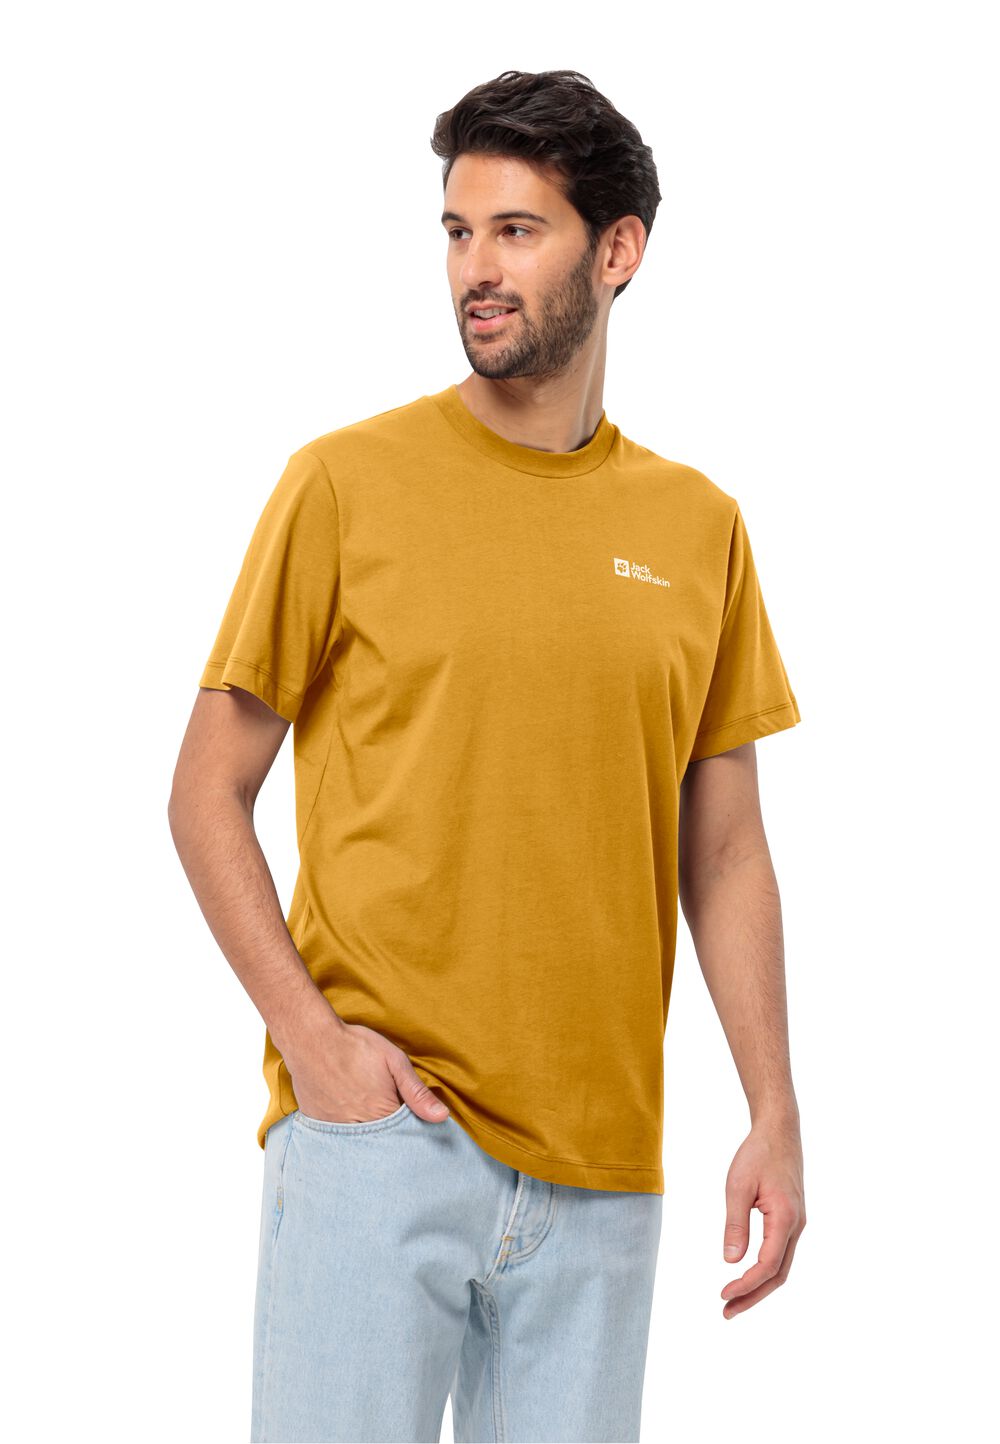 Jack Wolfskin Essential T-Shirt Men Heren T-shirt van biologisch katoen XL bruin curry